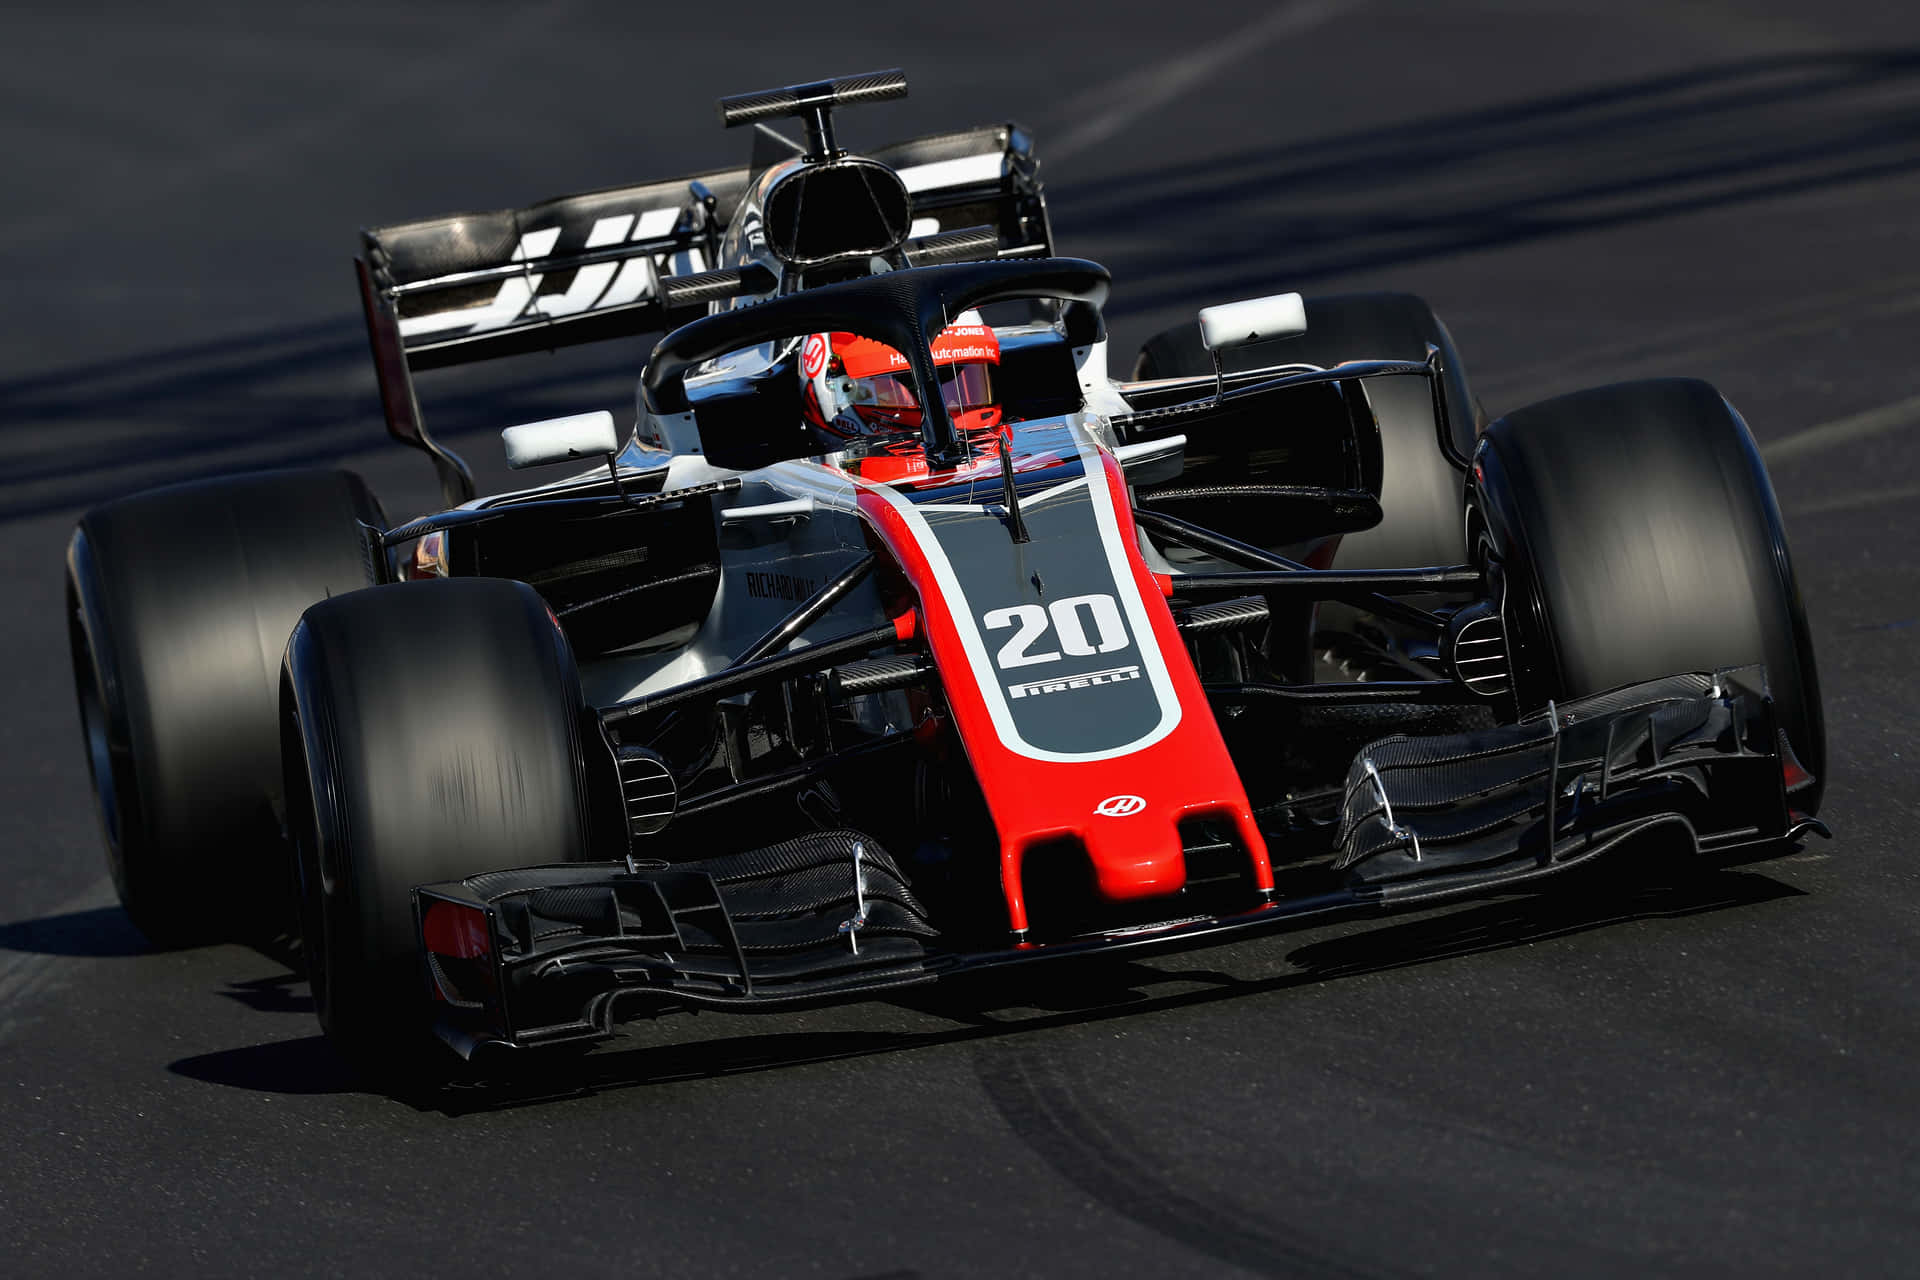 Kevin Magnussen Race Car F1 2018 Background